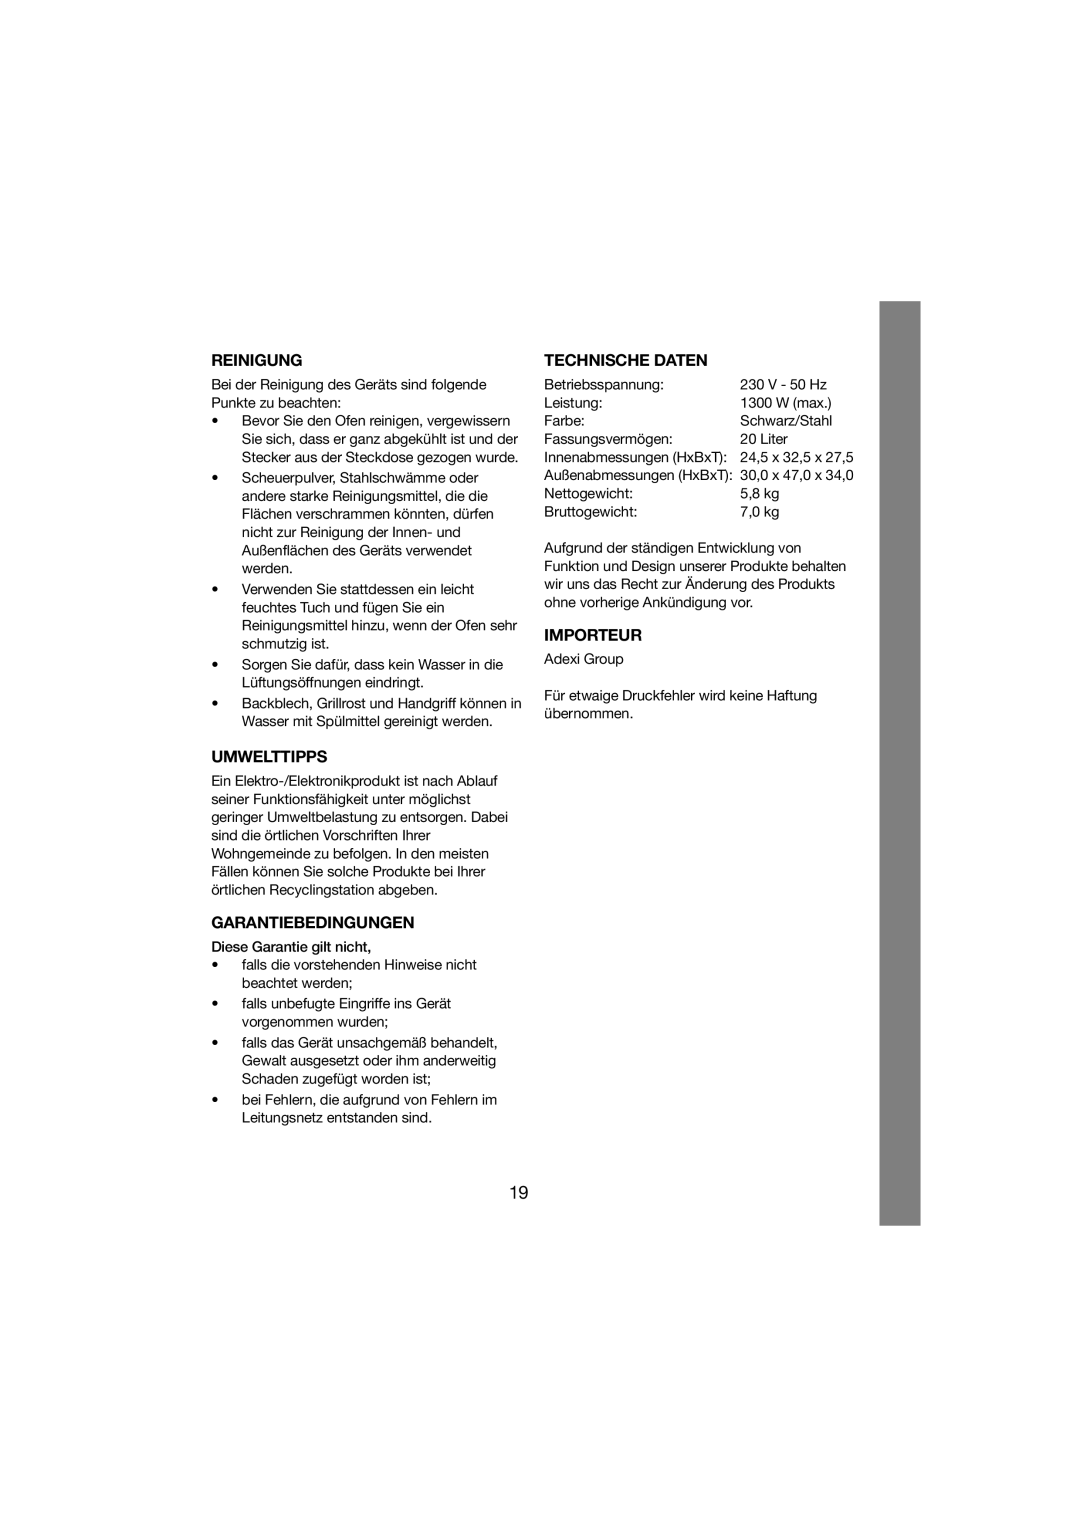 Melissa 251-003 manual Reinigung, Umwelttipps, Garantiebedingungen, Technische Daten, Importeur 